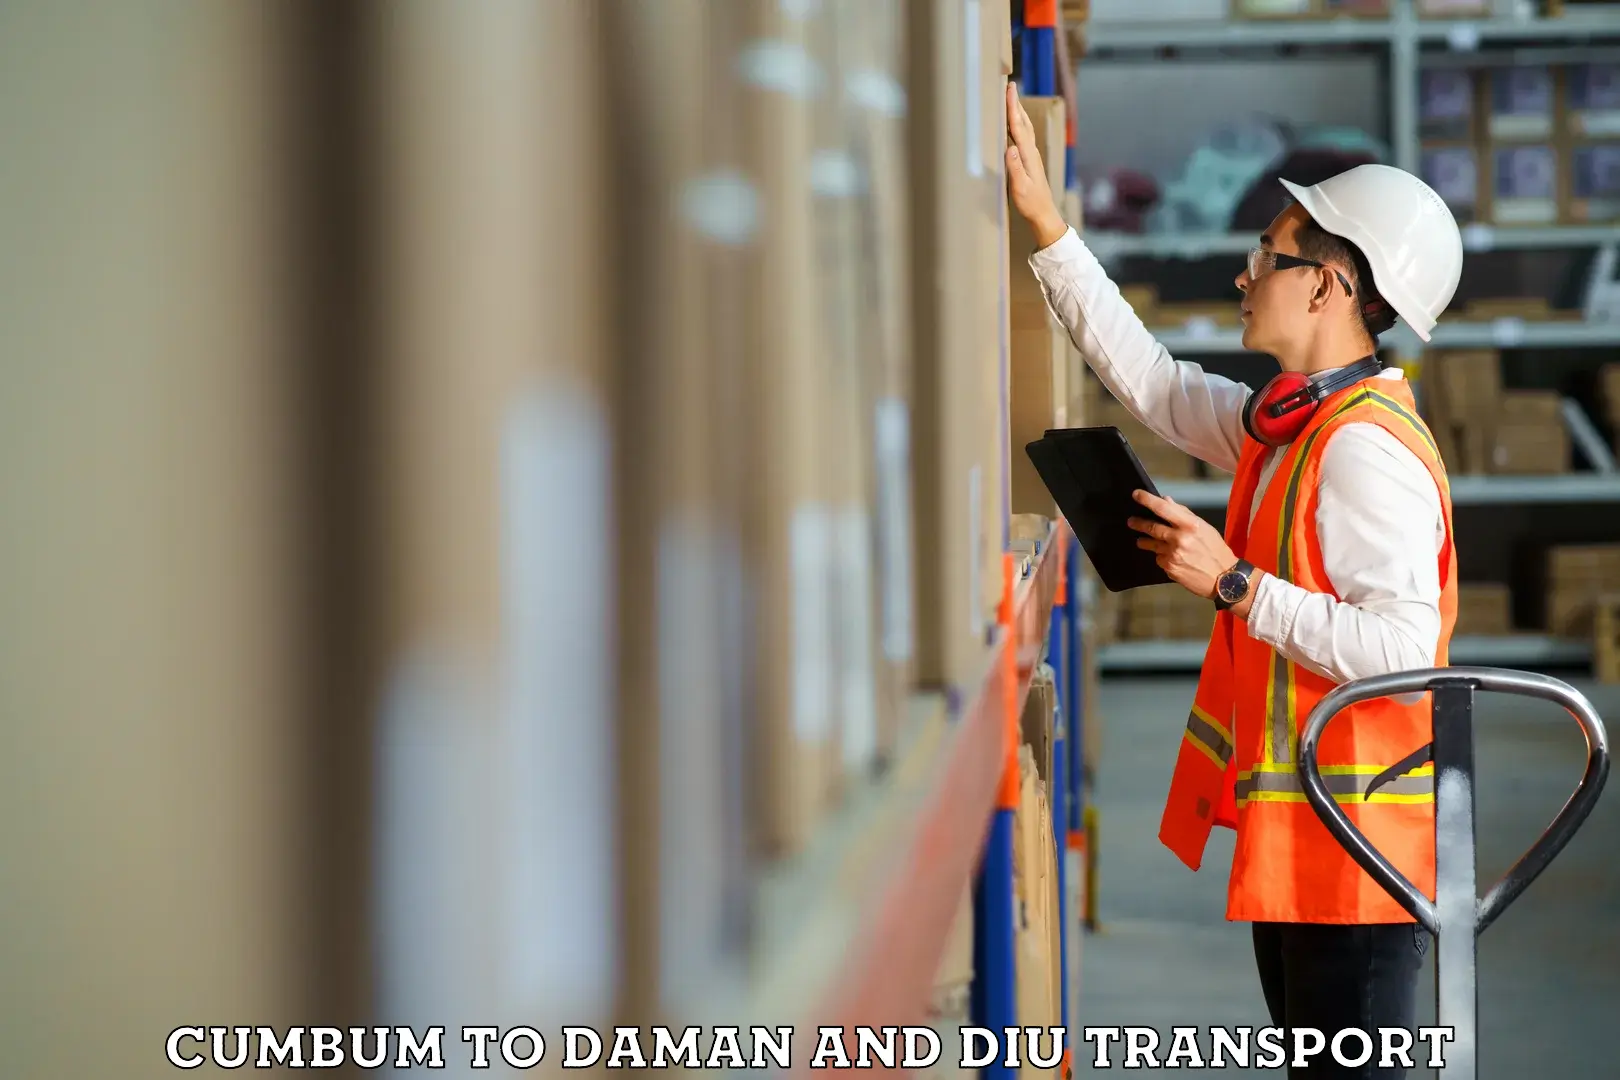 Online transport service Cumbum to Daman and Diu